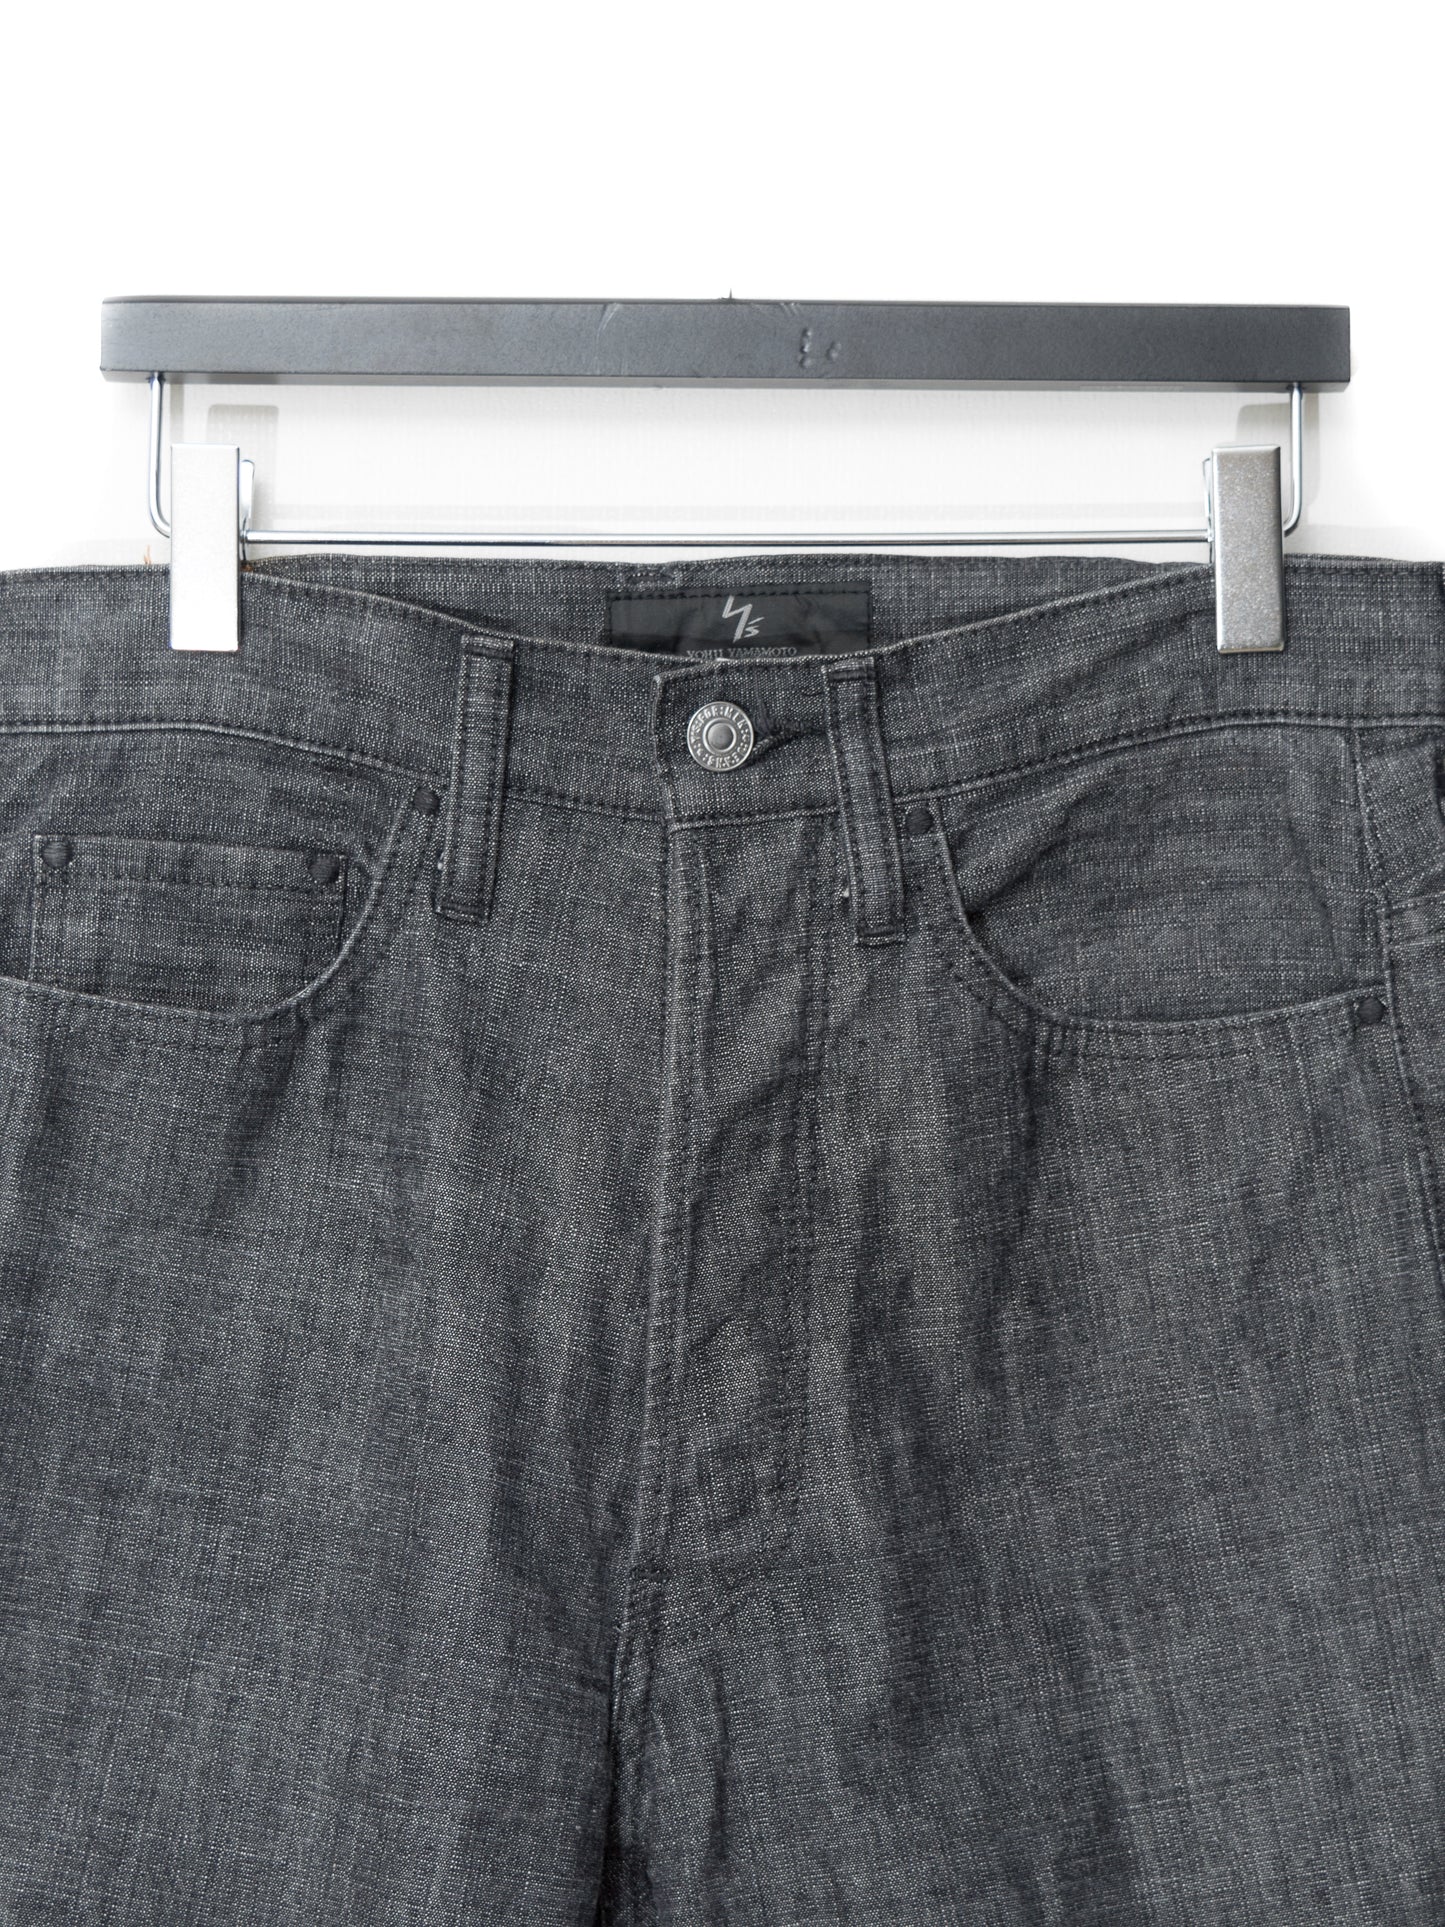 5p jeans graphite ∙ cotton ∙ medium